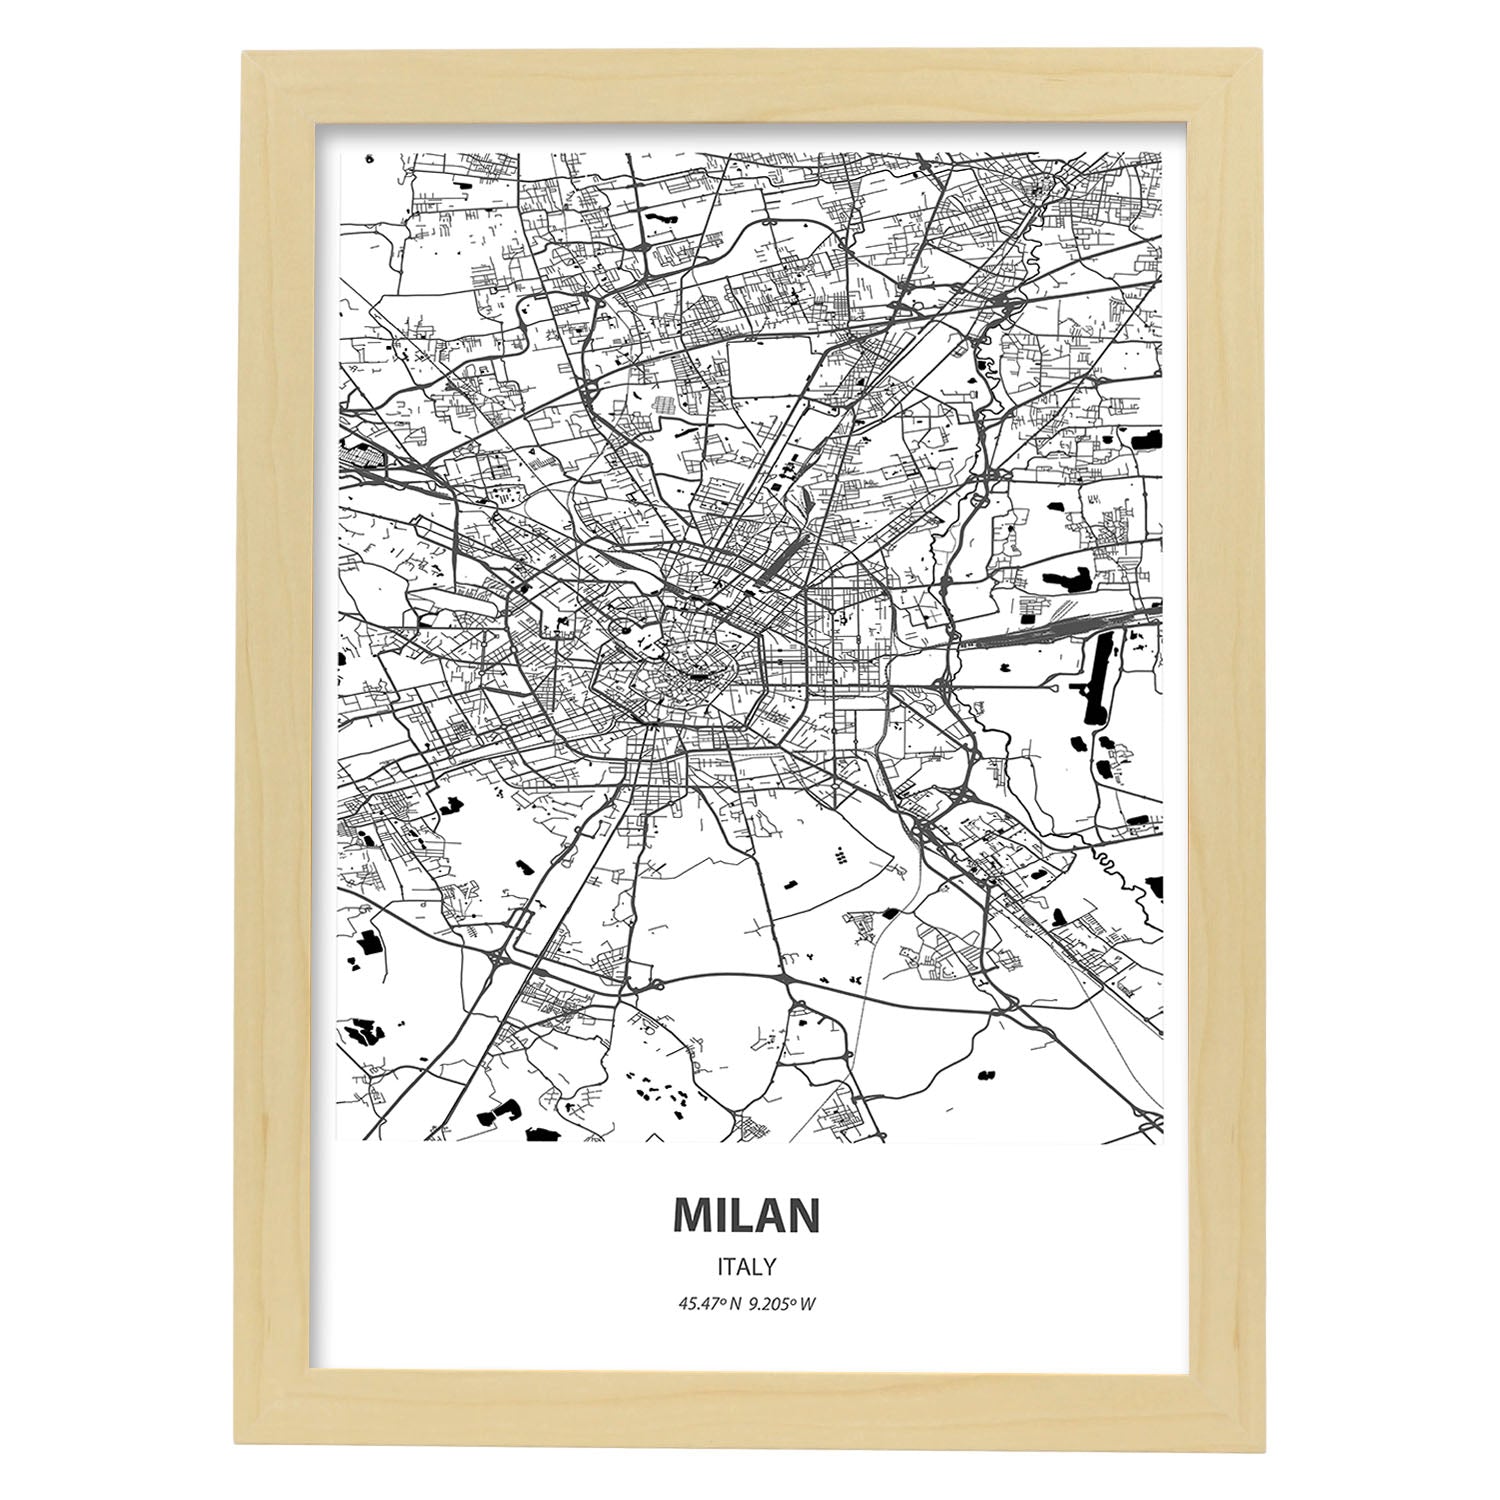 Poster con mapa de Milan - Italia. Láminas de ciudades de Italia con mares y ríos en color negro.-Artwork-Nacnic-A3-Marco Madera clara-Nacnic Estudio SL